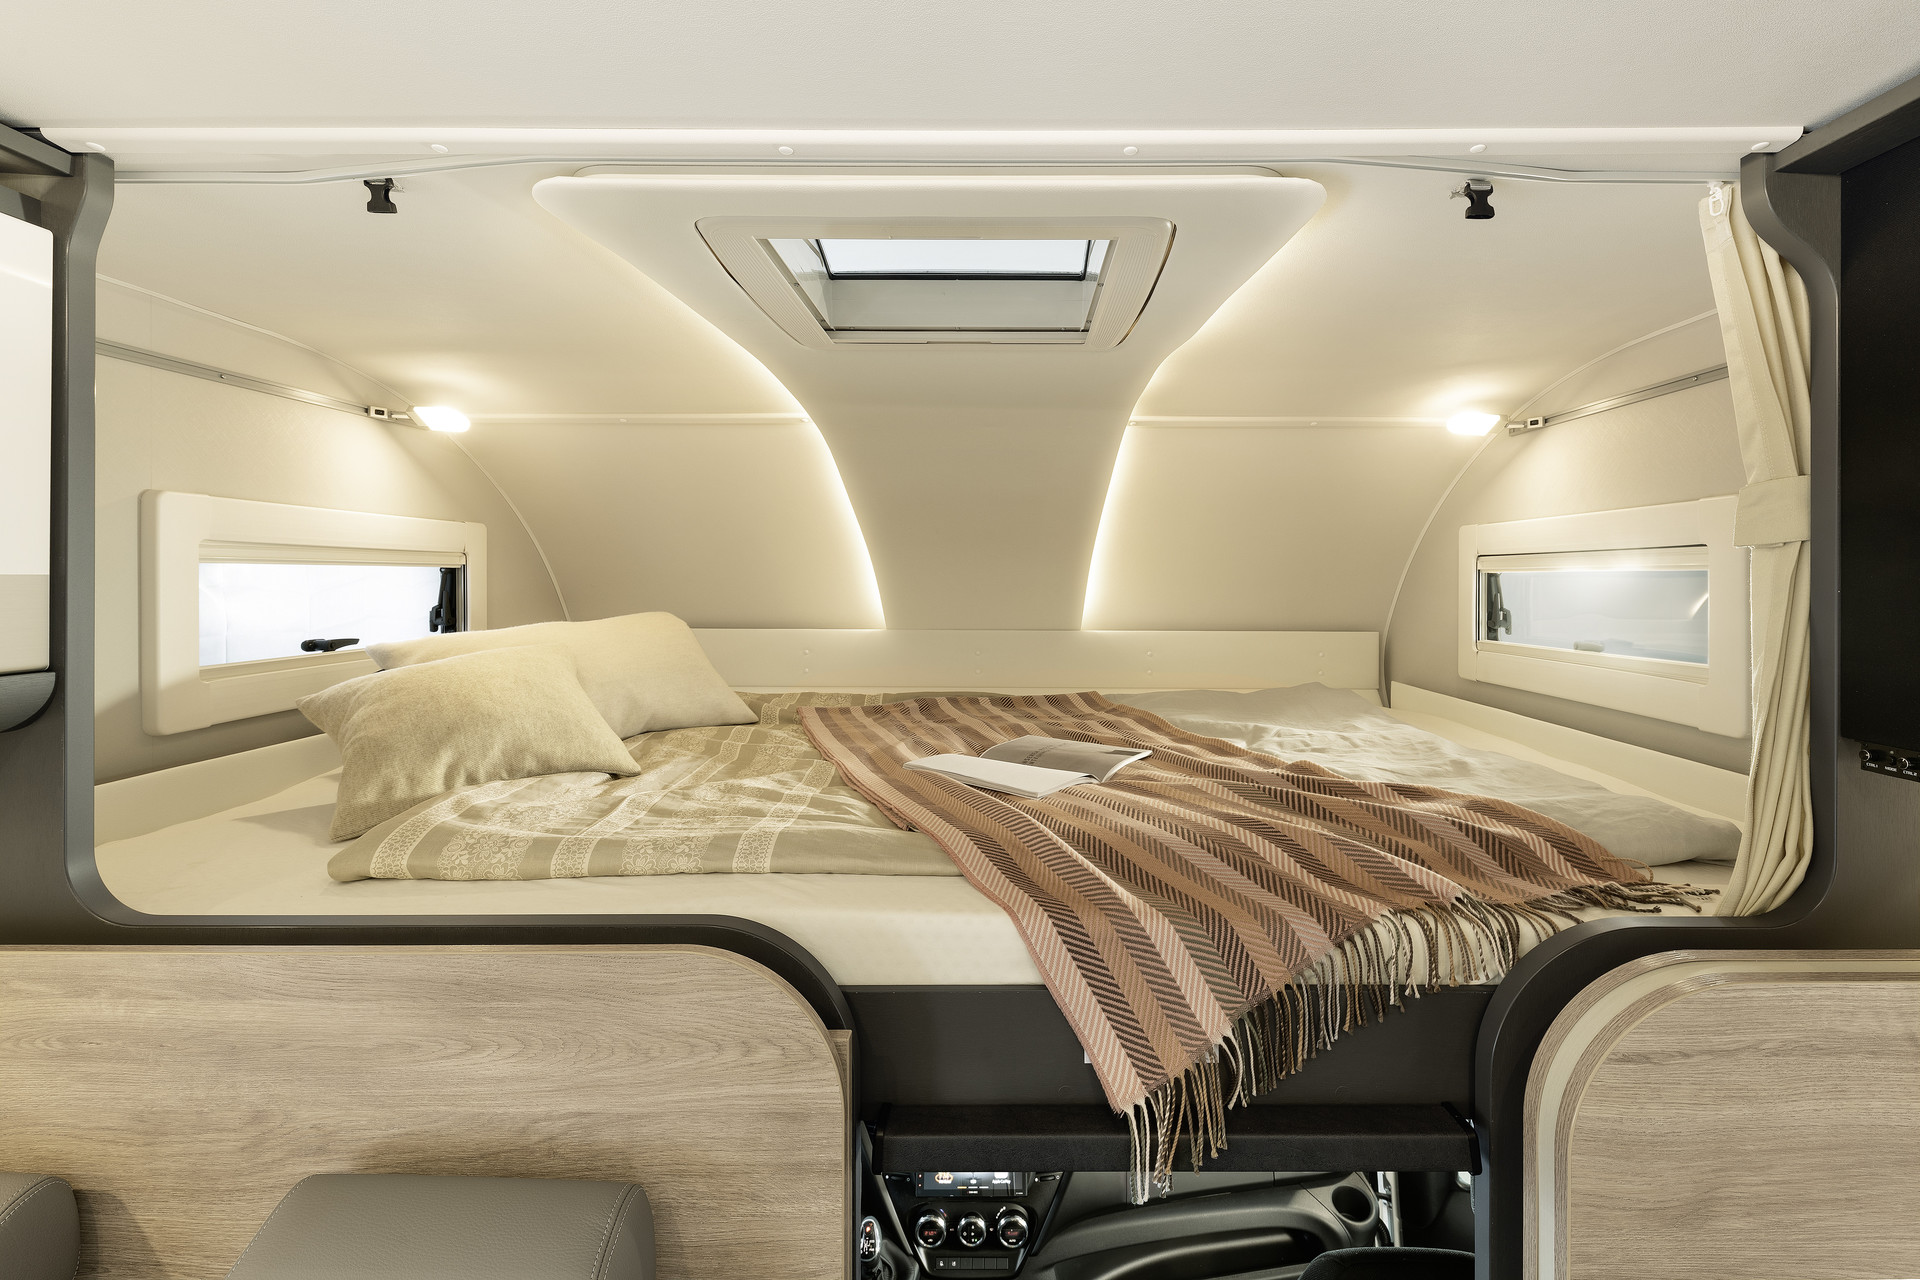 Alkowa to komfortowa, oddzielona przestrzeń sypialna. Dzięki wymiarom 215 x 150 cm jest ona wystarczająca nawet dla wysokich osób. Alkowa może także służyć jako dodatkowy luk bagażowy. Aby zapewnić wygodne przejście do kabiny kierowcy, łóżko w alkowie można podnieść.